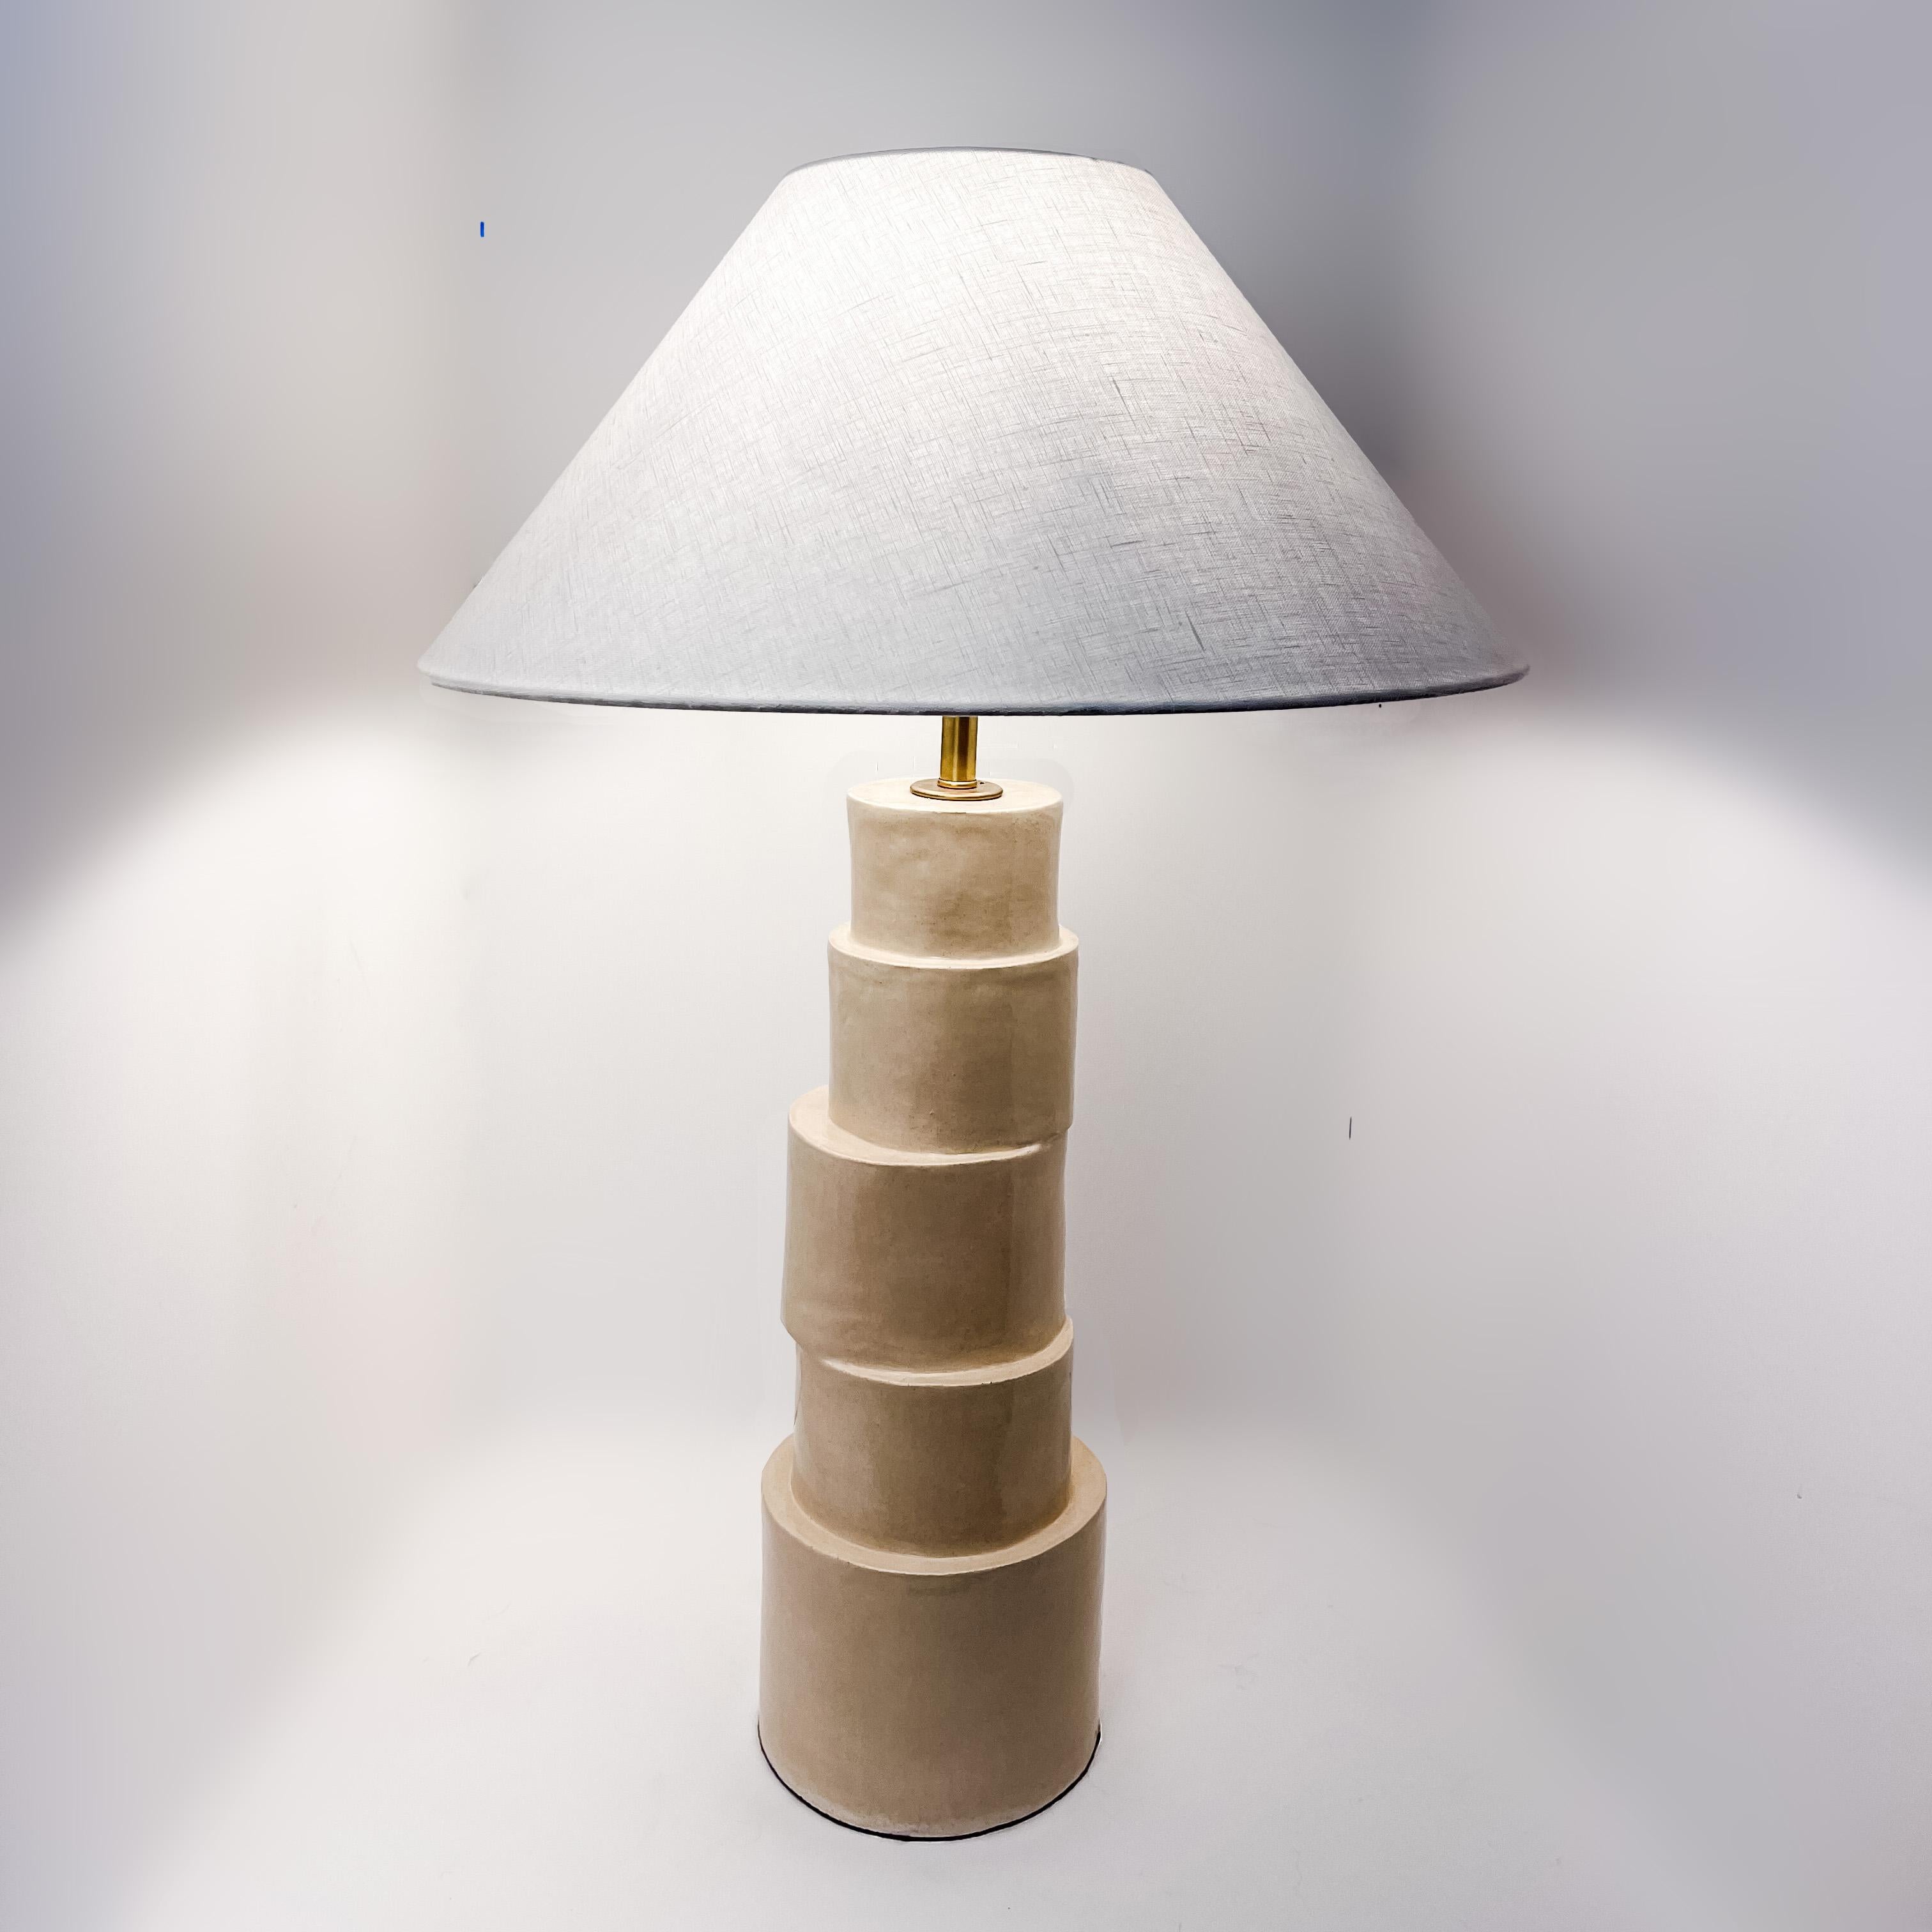 La lampe de table Stacked Column est fabriquée à la main en argile raku dans une glaçure camel avec des composants en laiton, un cordon en tissu argenté tressé et un abat-jour en lin ivoire. La nature répétitive, le ton neutre et le design